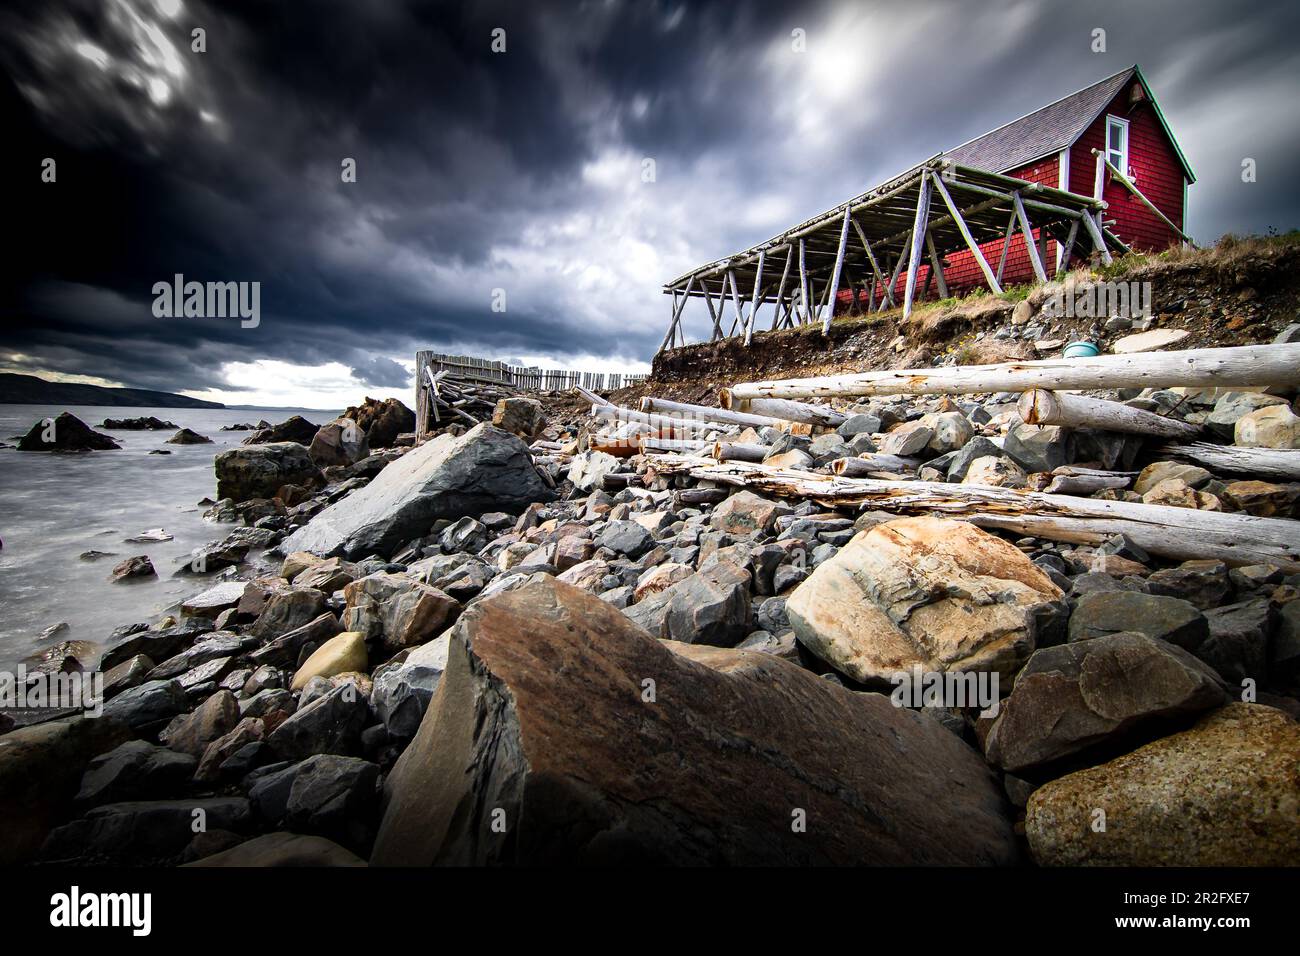 Rayonnages de séchage de morue salée en bois à exposition longue et bâtiment historique sur un rivage rocheux surplombant l'océan Atlantique à Bonavista Terre-Neuve-et-Labrador Canada. Banque D'Images